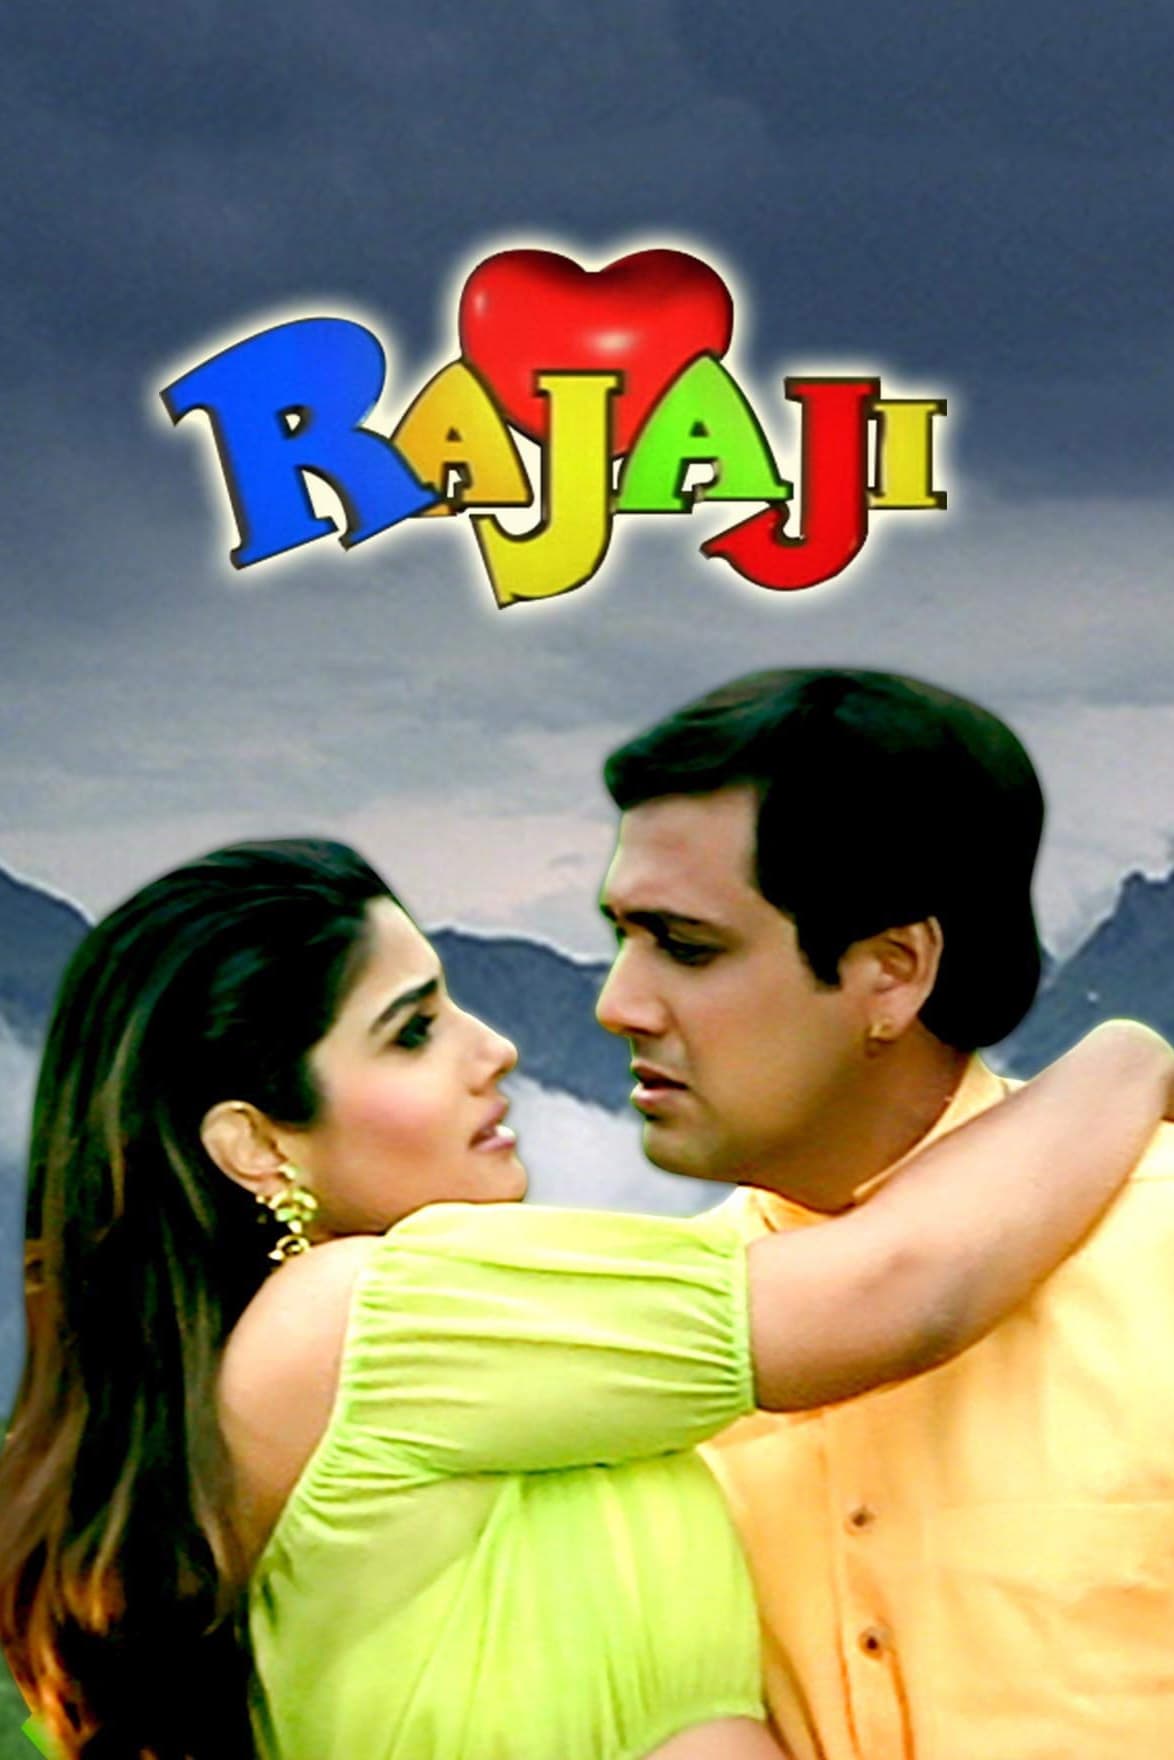 Rajaji (1999)